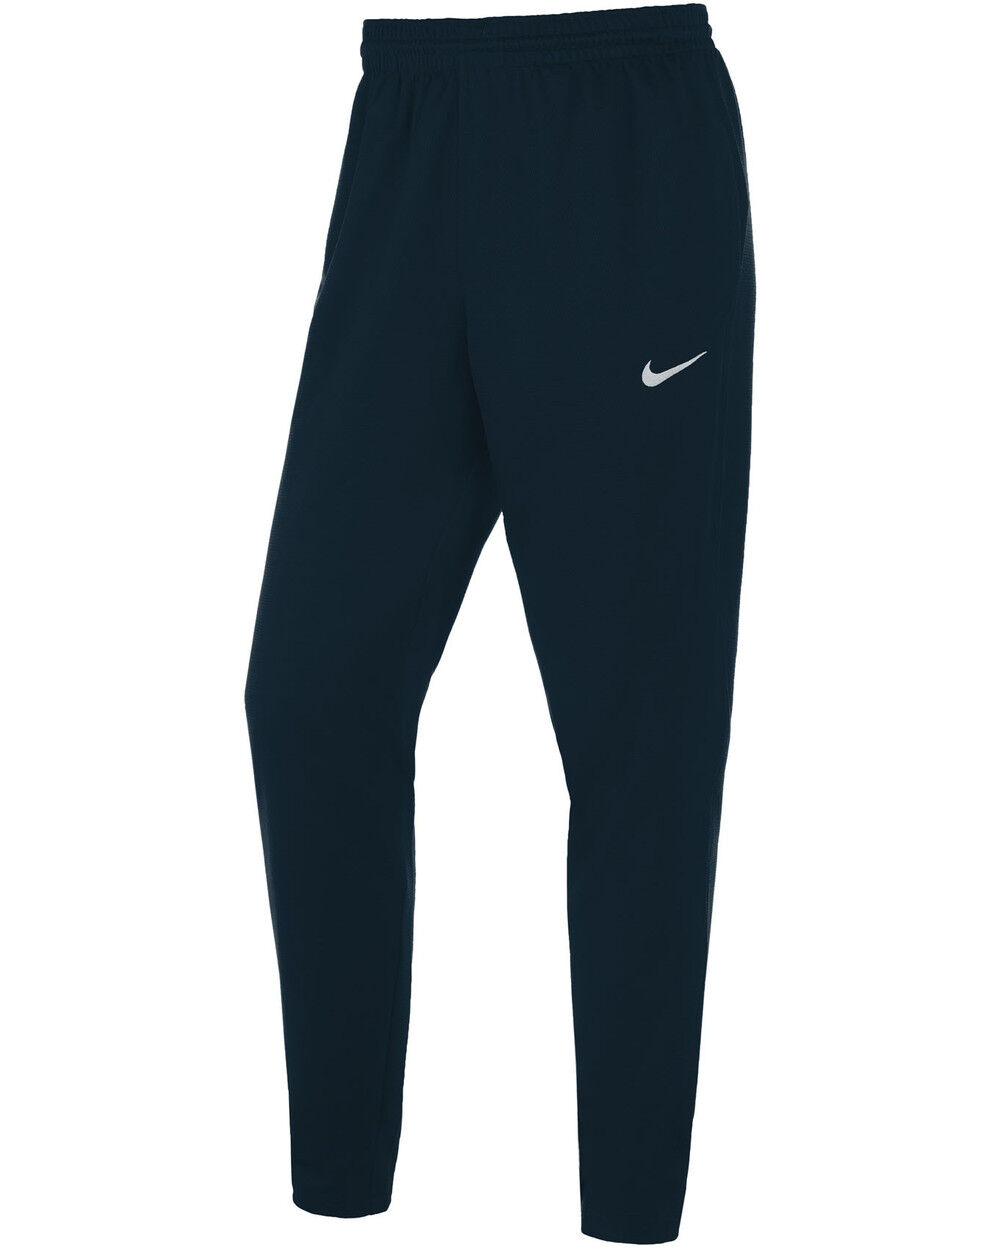 Pantalón de chándal Nike Team Azul Marino para Hombre - NT0207-451